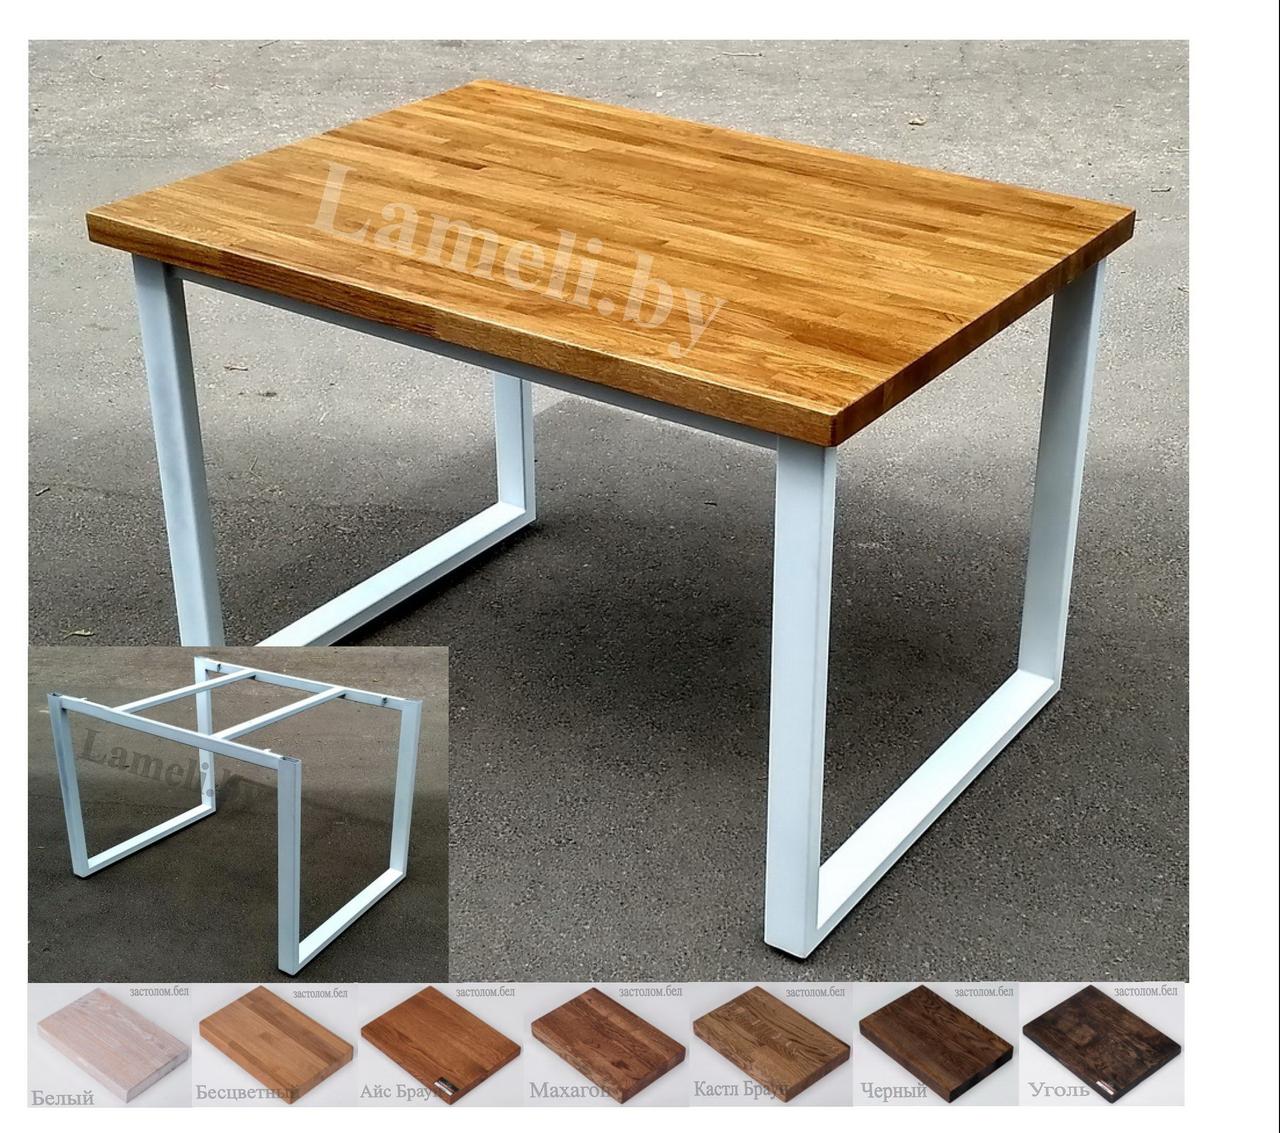 Стол кухонный на металлокаркасе серии "О" из постформинга, массива дуба или ЛДСП с выбором размера и цвета, фото 1